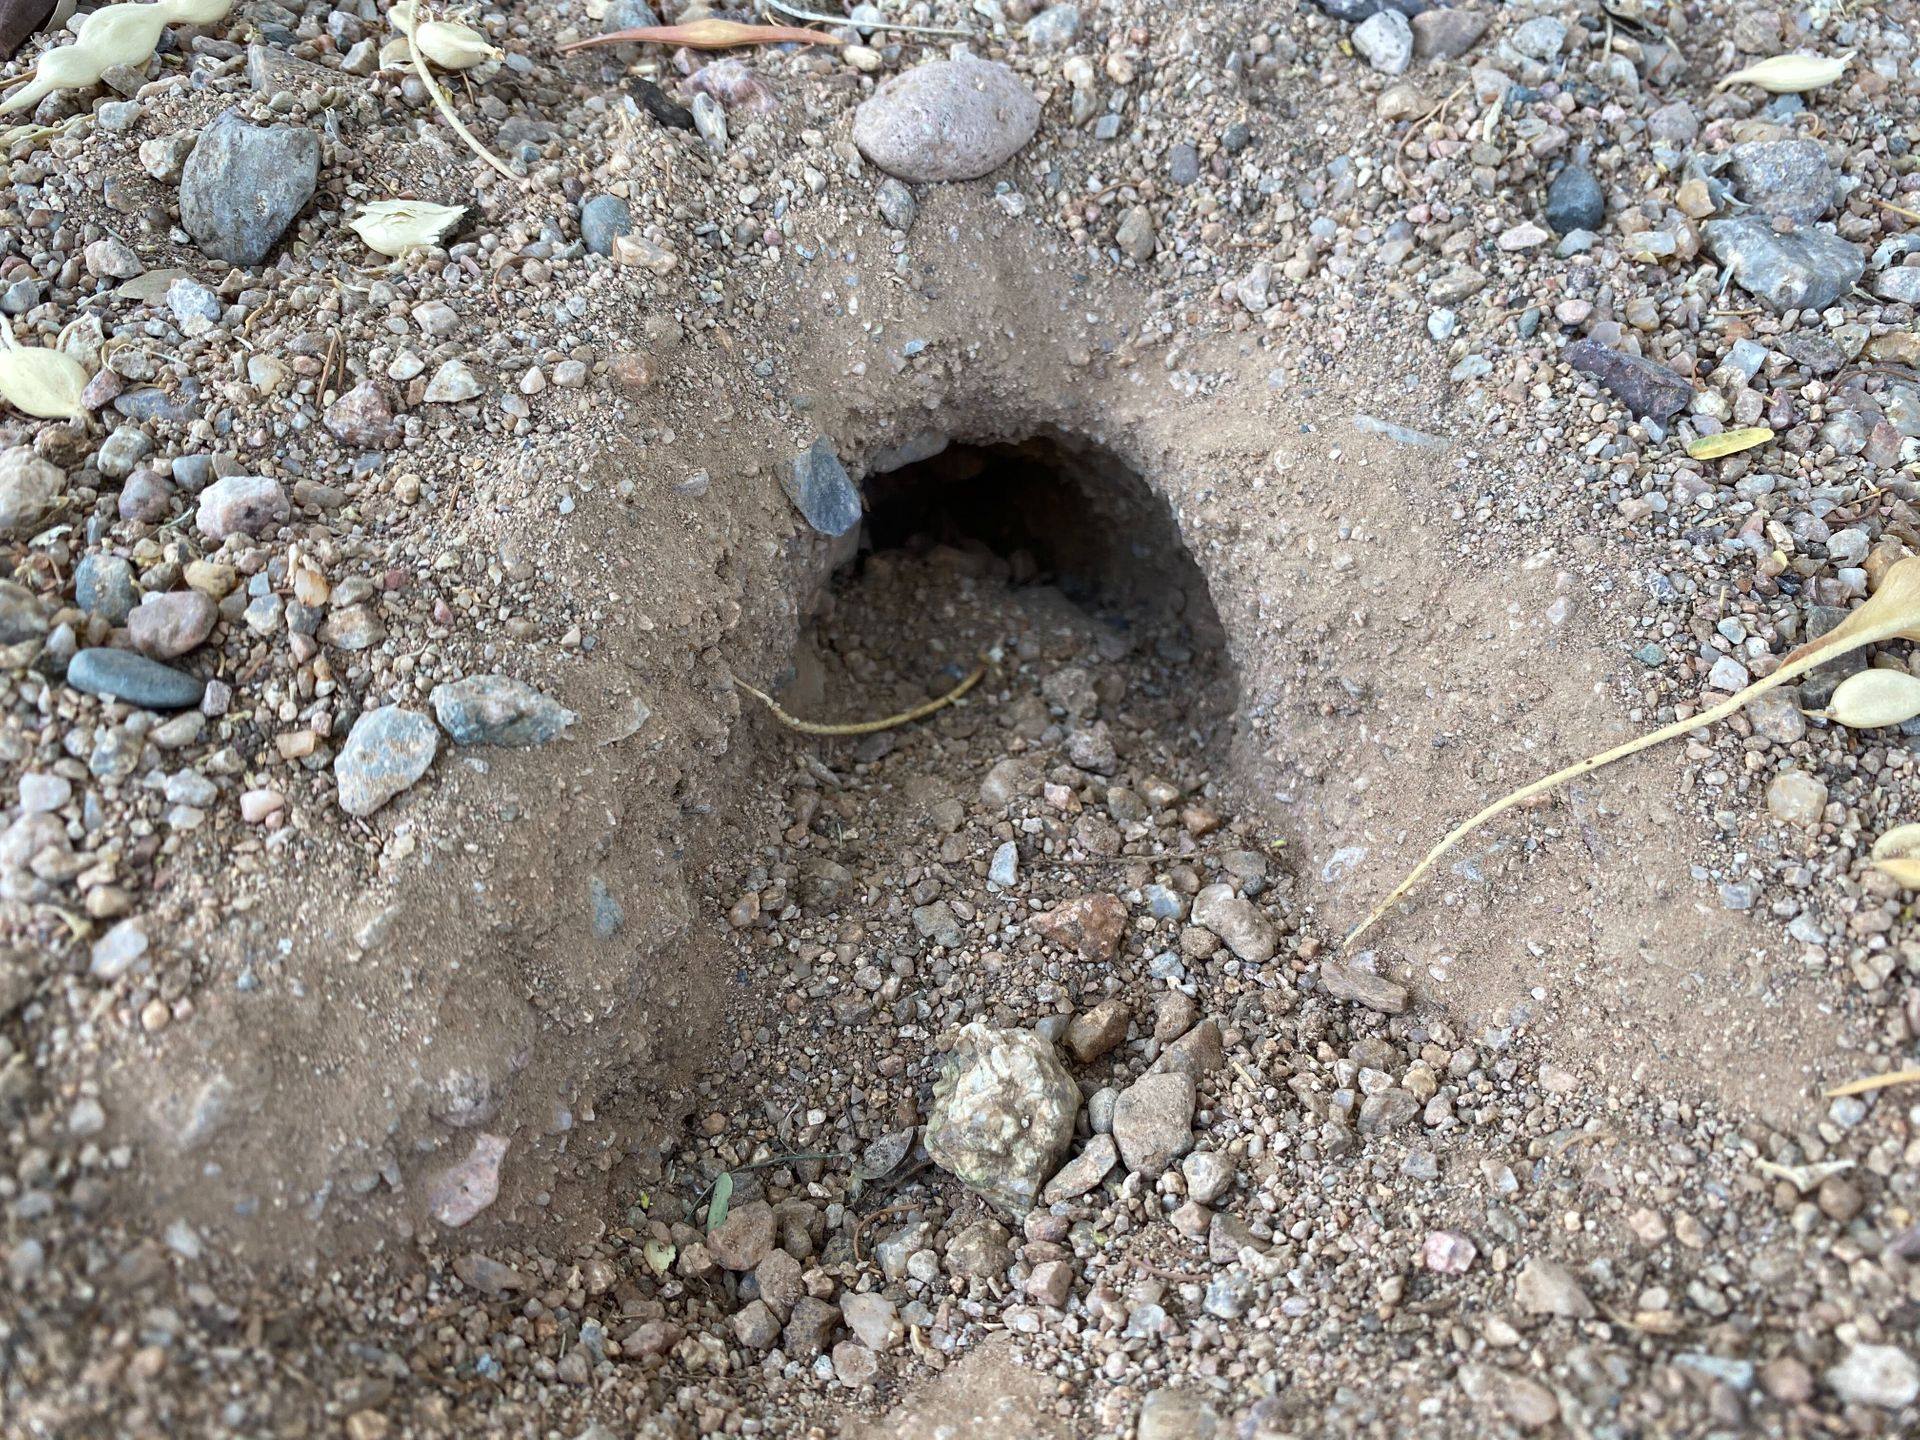 Do Rattlesnakes Live in Holes?